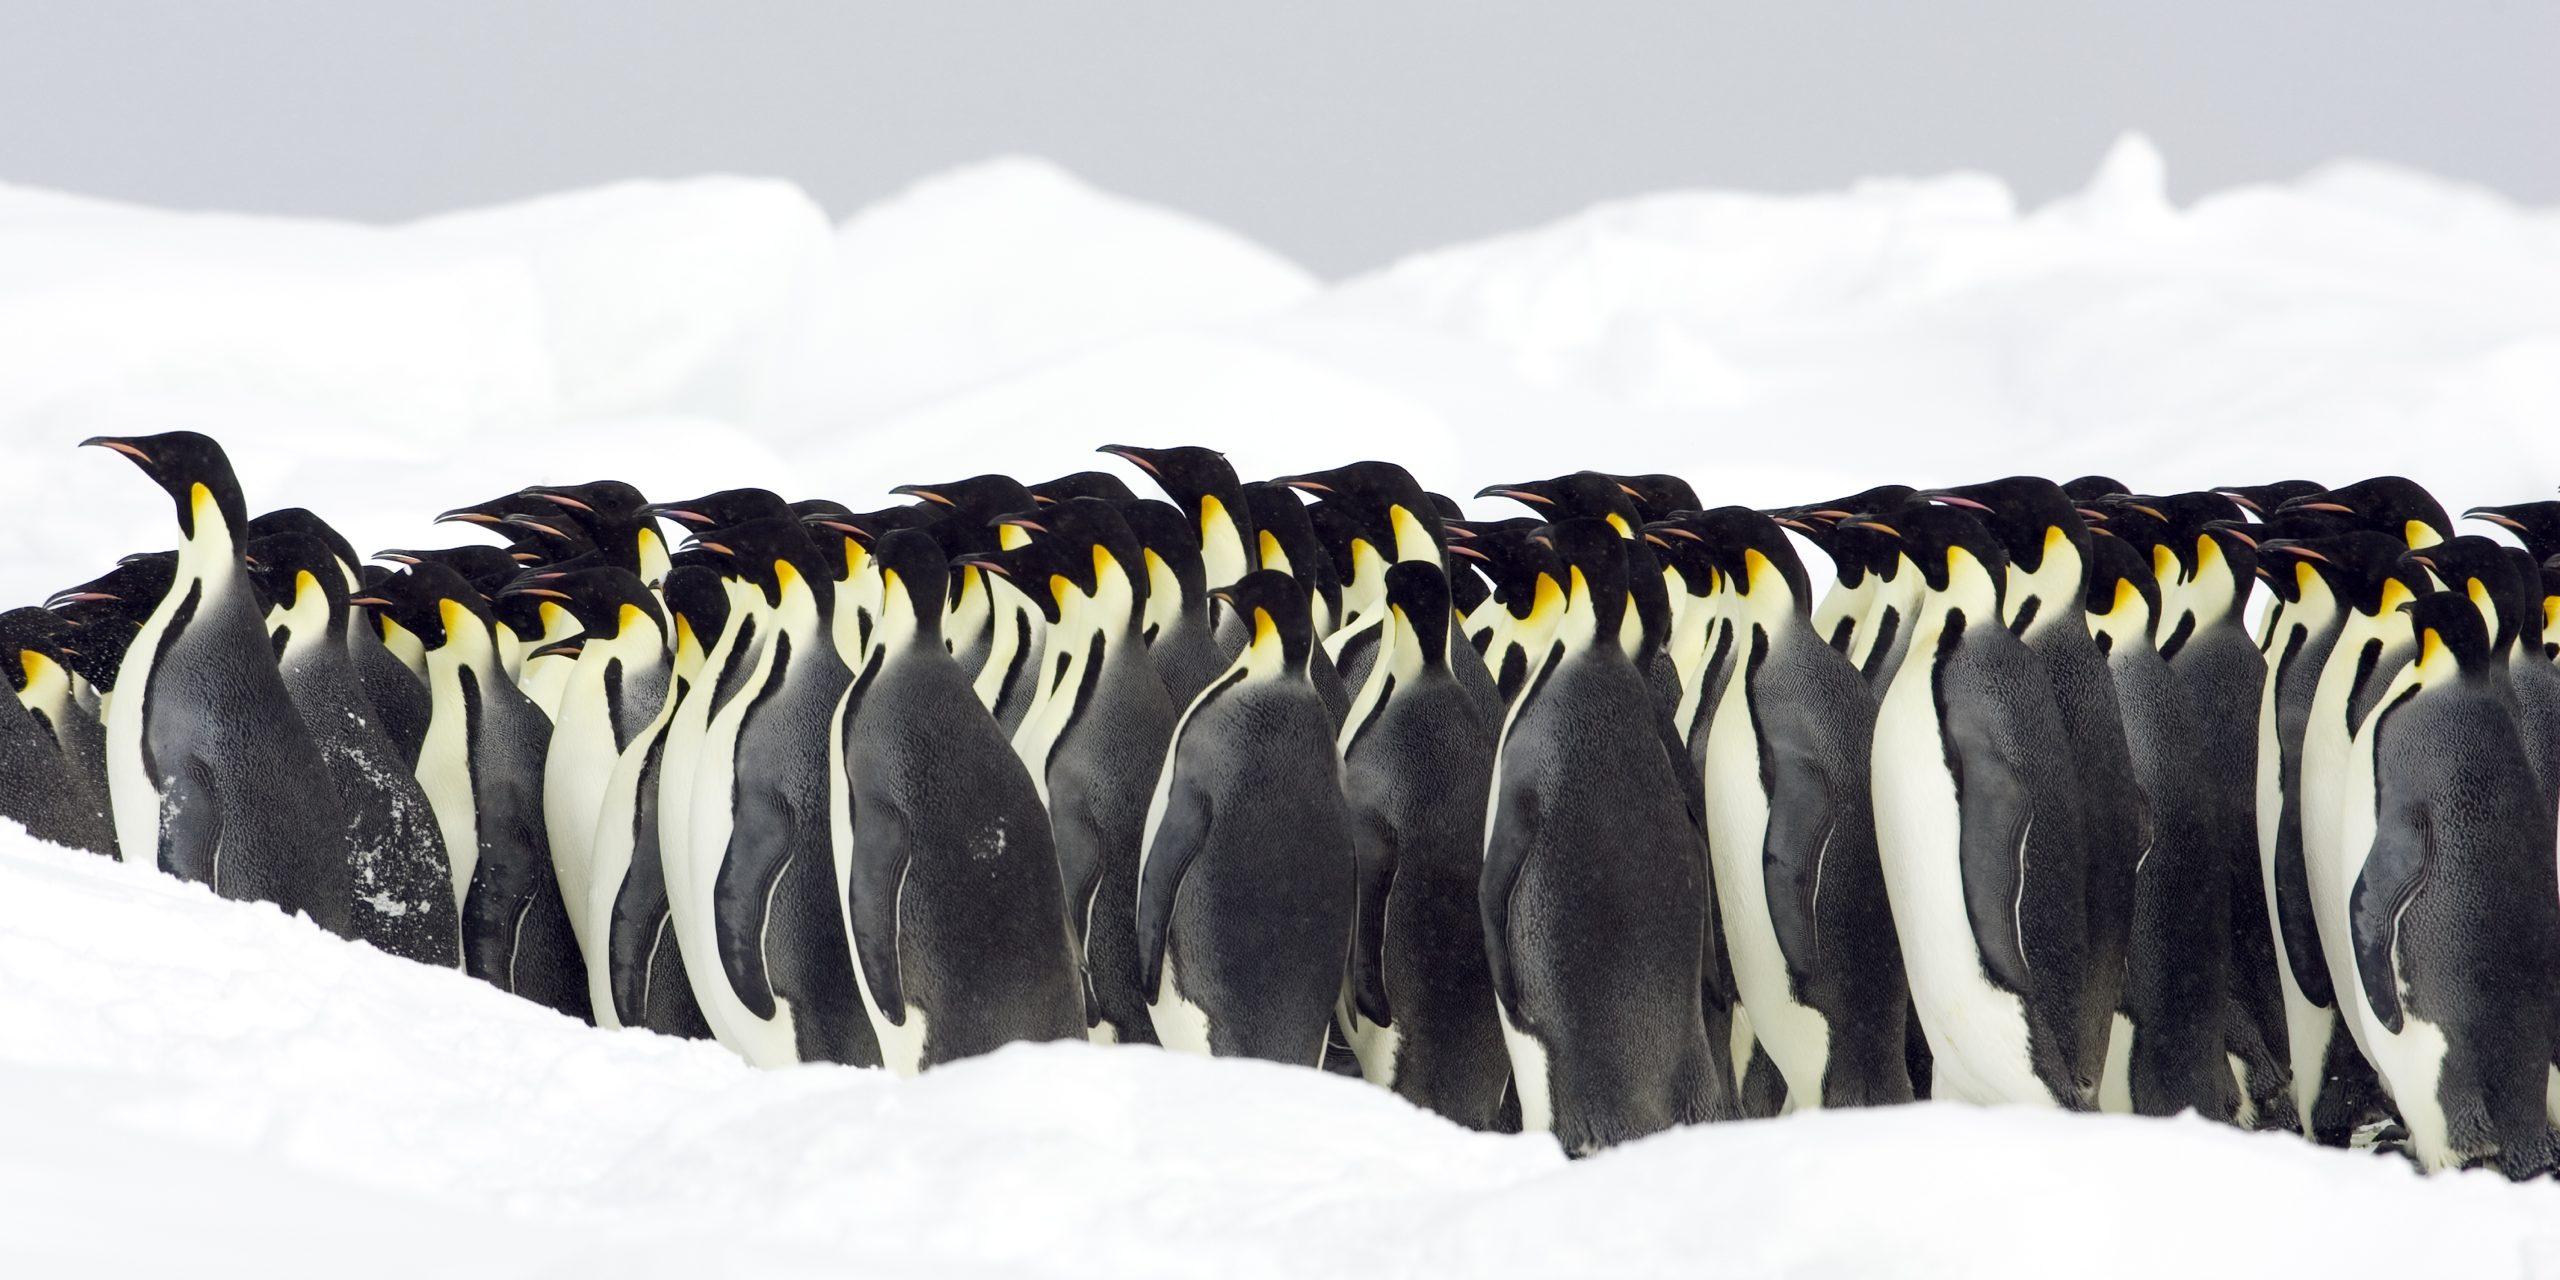 Императорский пингвин чемпион по нырянию среди пингвинов. Пингвины стая или колония. Императорские пингвины греются. Птичий базар пингвины. Пингвин на черном фоне.